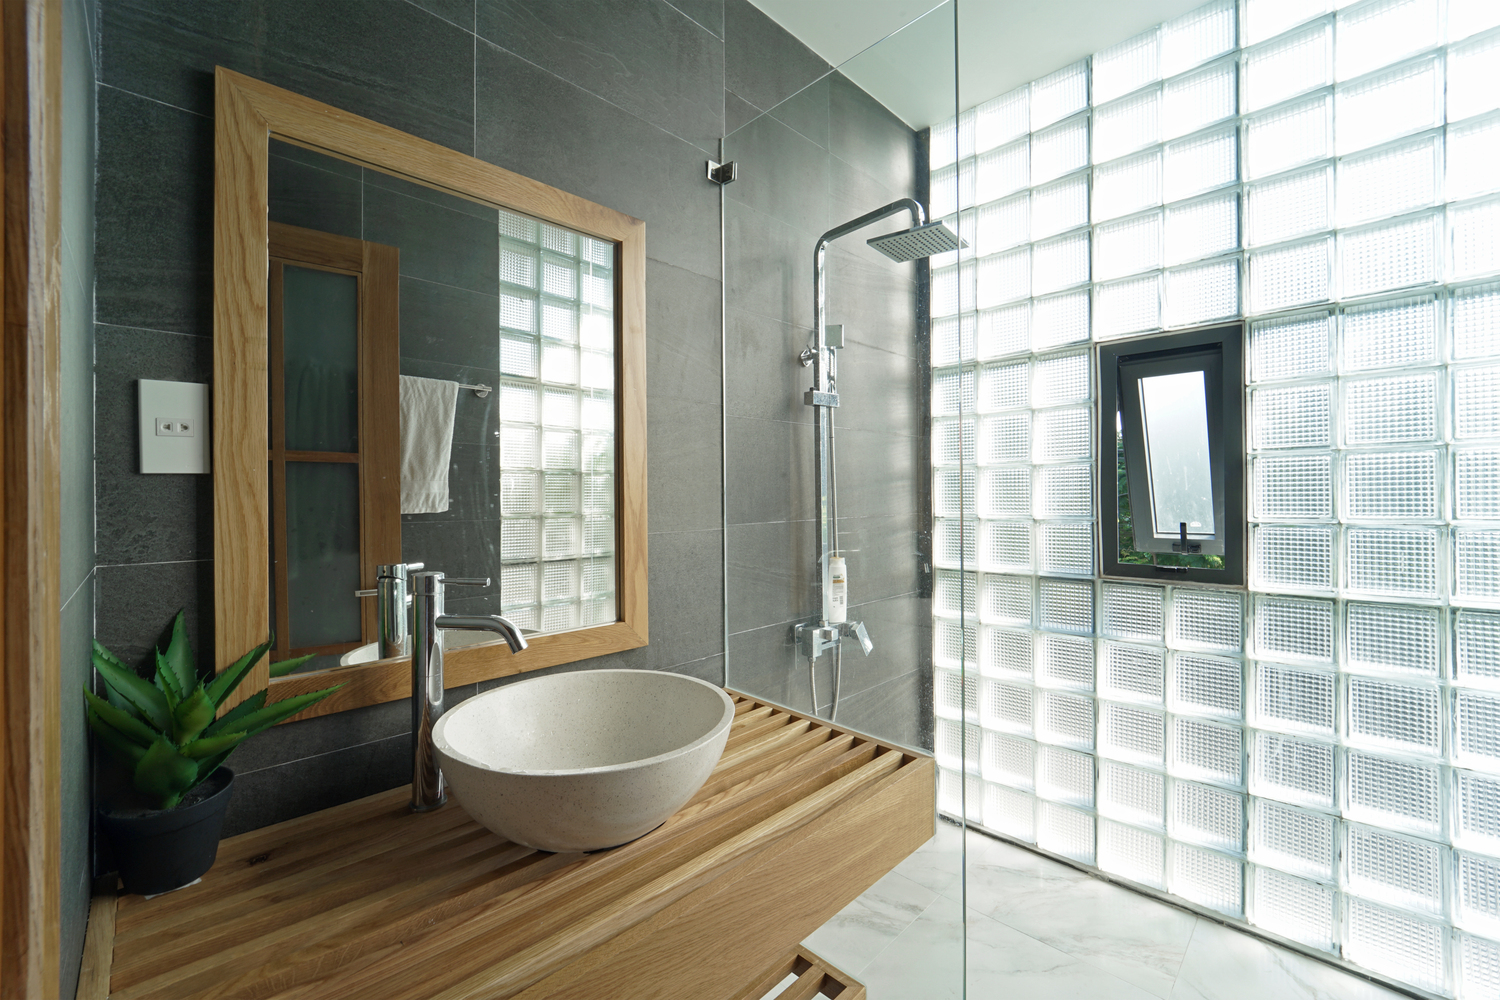 Tường gạch kính ở khu vực phòng tắm, vệ sinh vừa giúp đón sáng tự nhiên hiệu quả, vừa đảm bảo tính riêng tư, kín đáo.